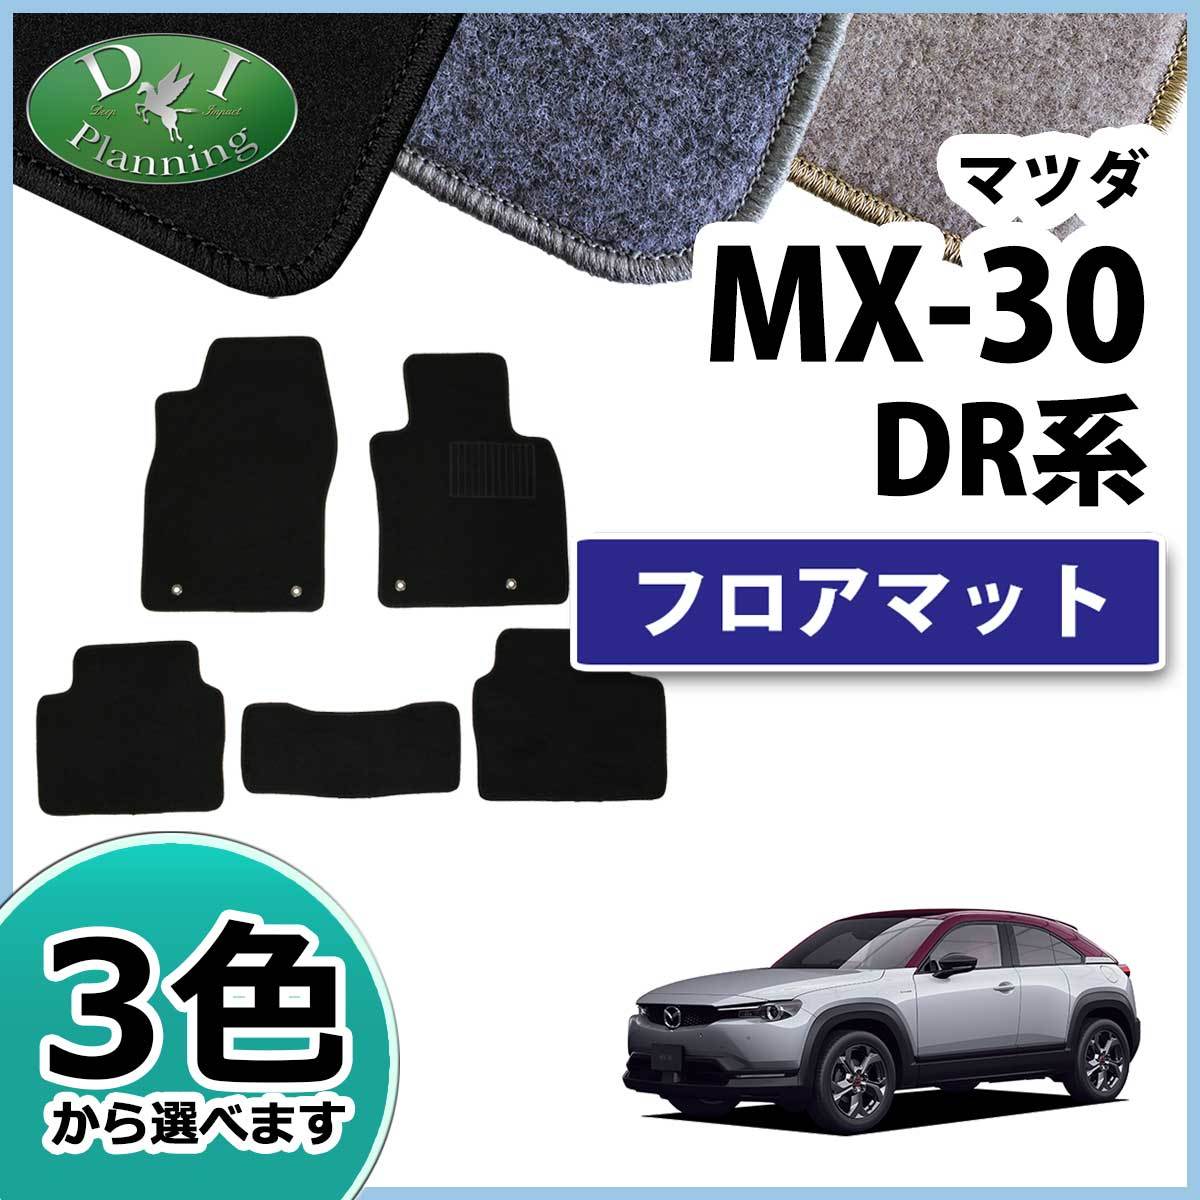 マツダ MX-30 MX30 DREJ3P フロアマット DX カーマット 自動車マット フロアシートカバー フロアーカーペット_画像1